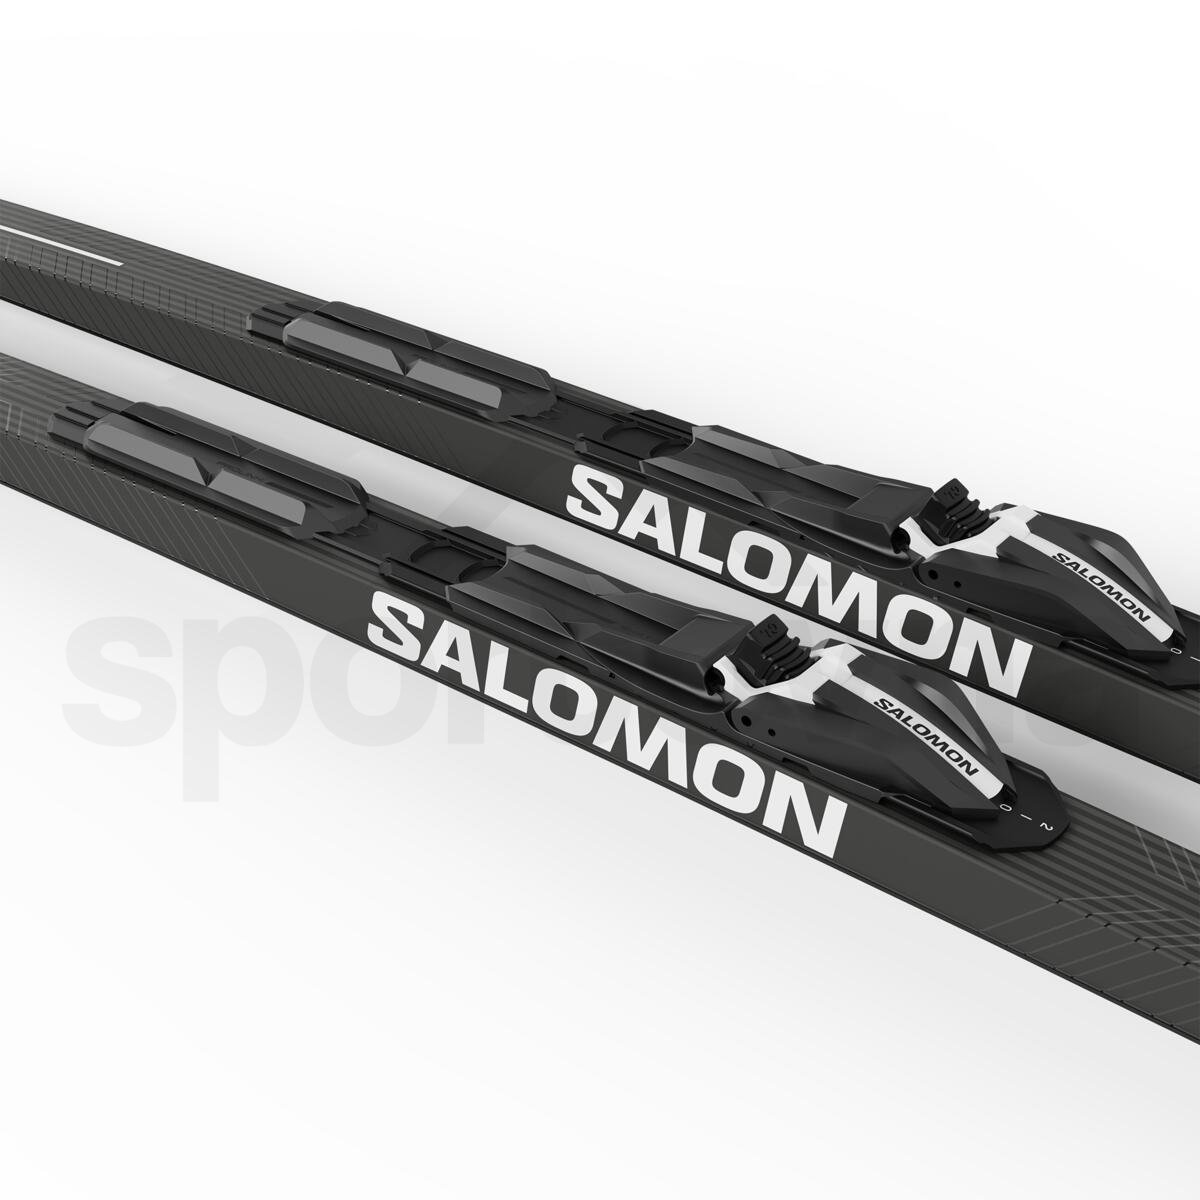 Běžky Salomon CX eSKIN Hard + Vázání Shift BDG - modrá/černá